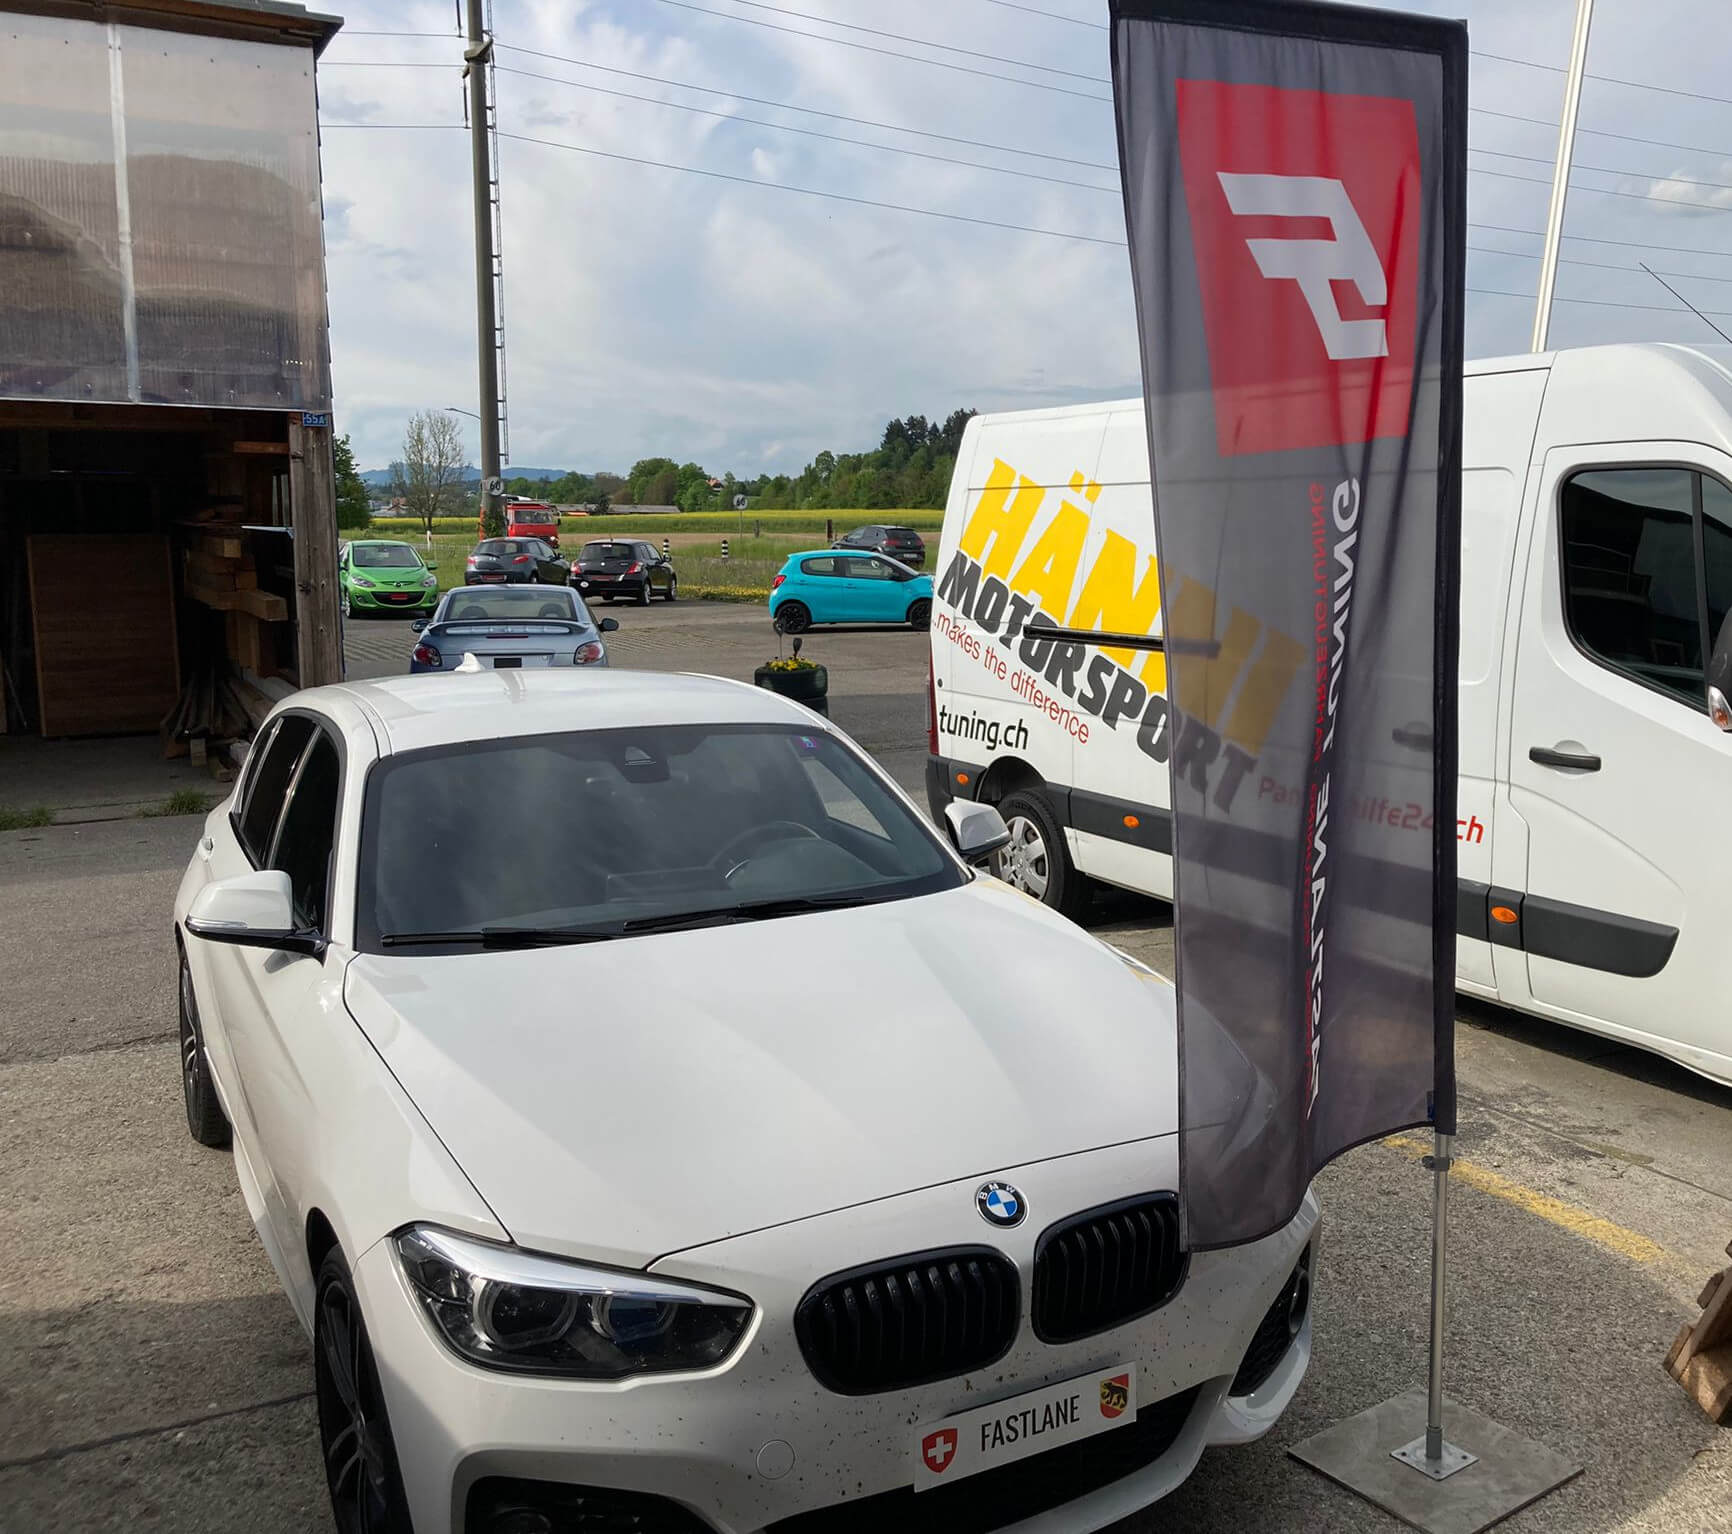 Ein weisser BMW 120i steht ausserhalb der Garage neben der Fastlane Tuning Schweiz Flagge und neben dem Hanni Motorsport Wagen.